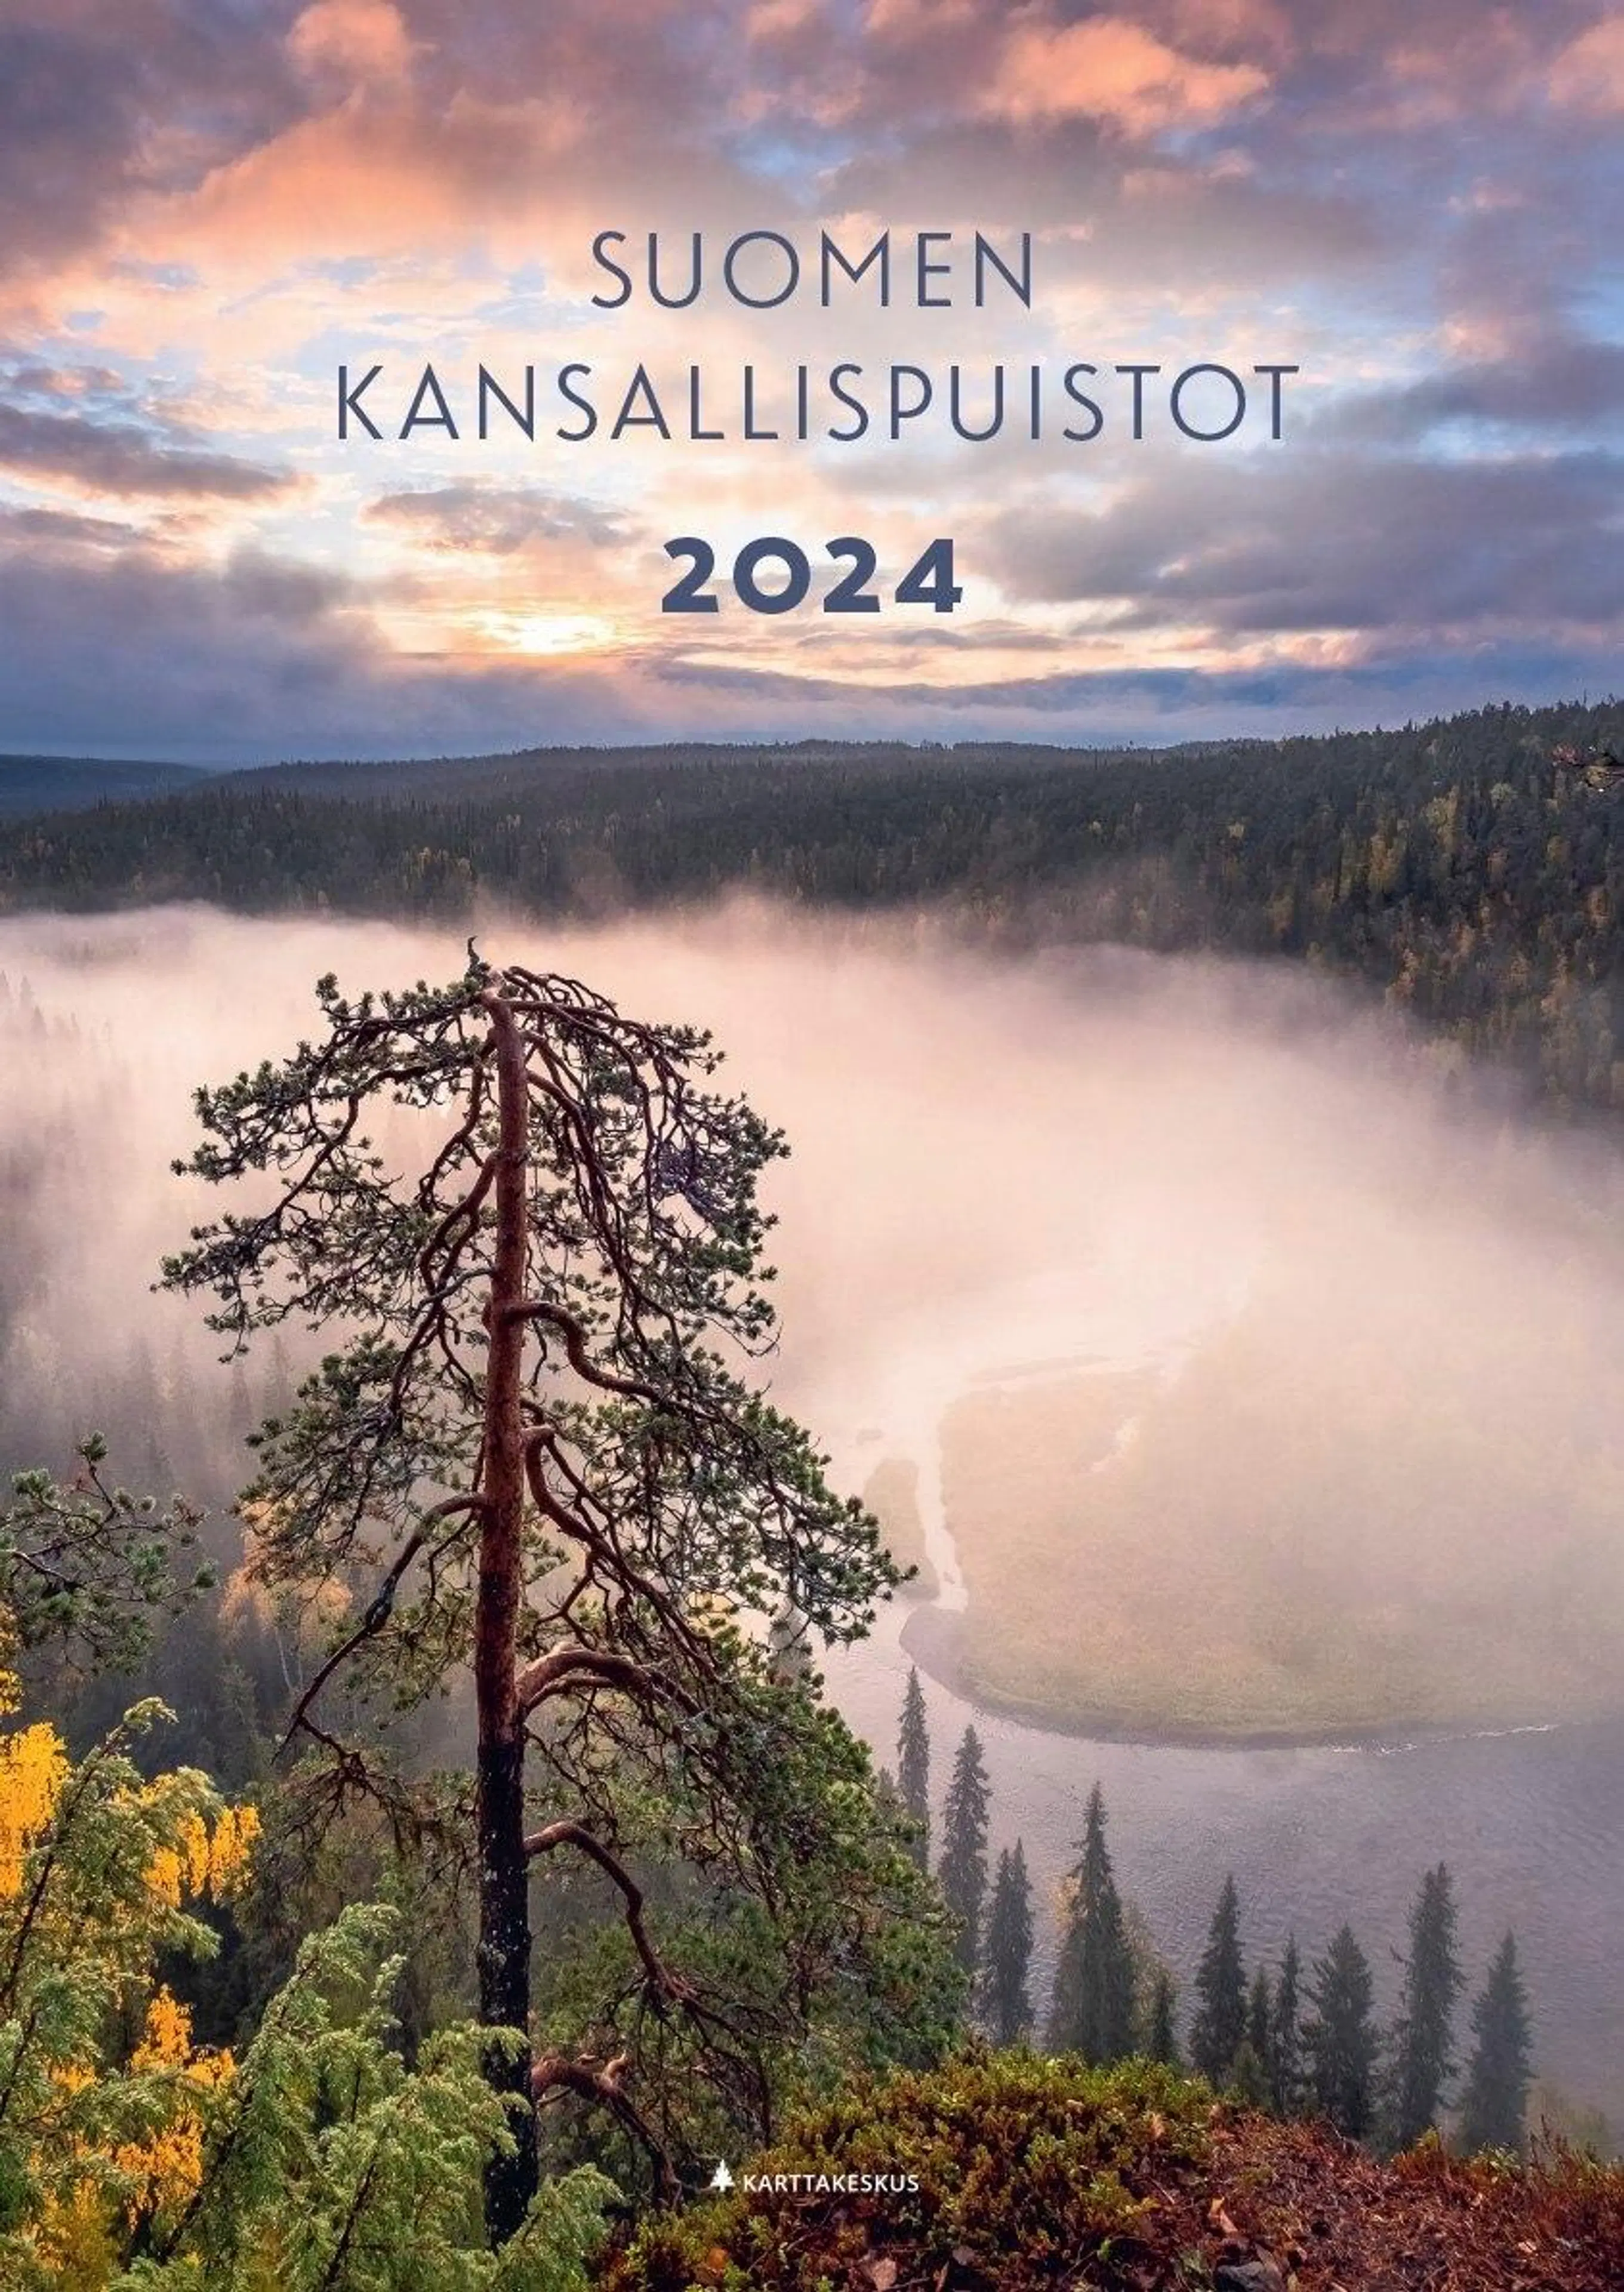 Suomen kansallispuistot 2024 -seinäkalenteri (Karttakeskus)